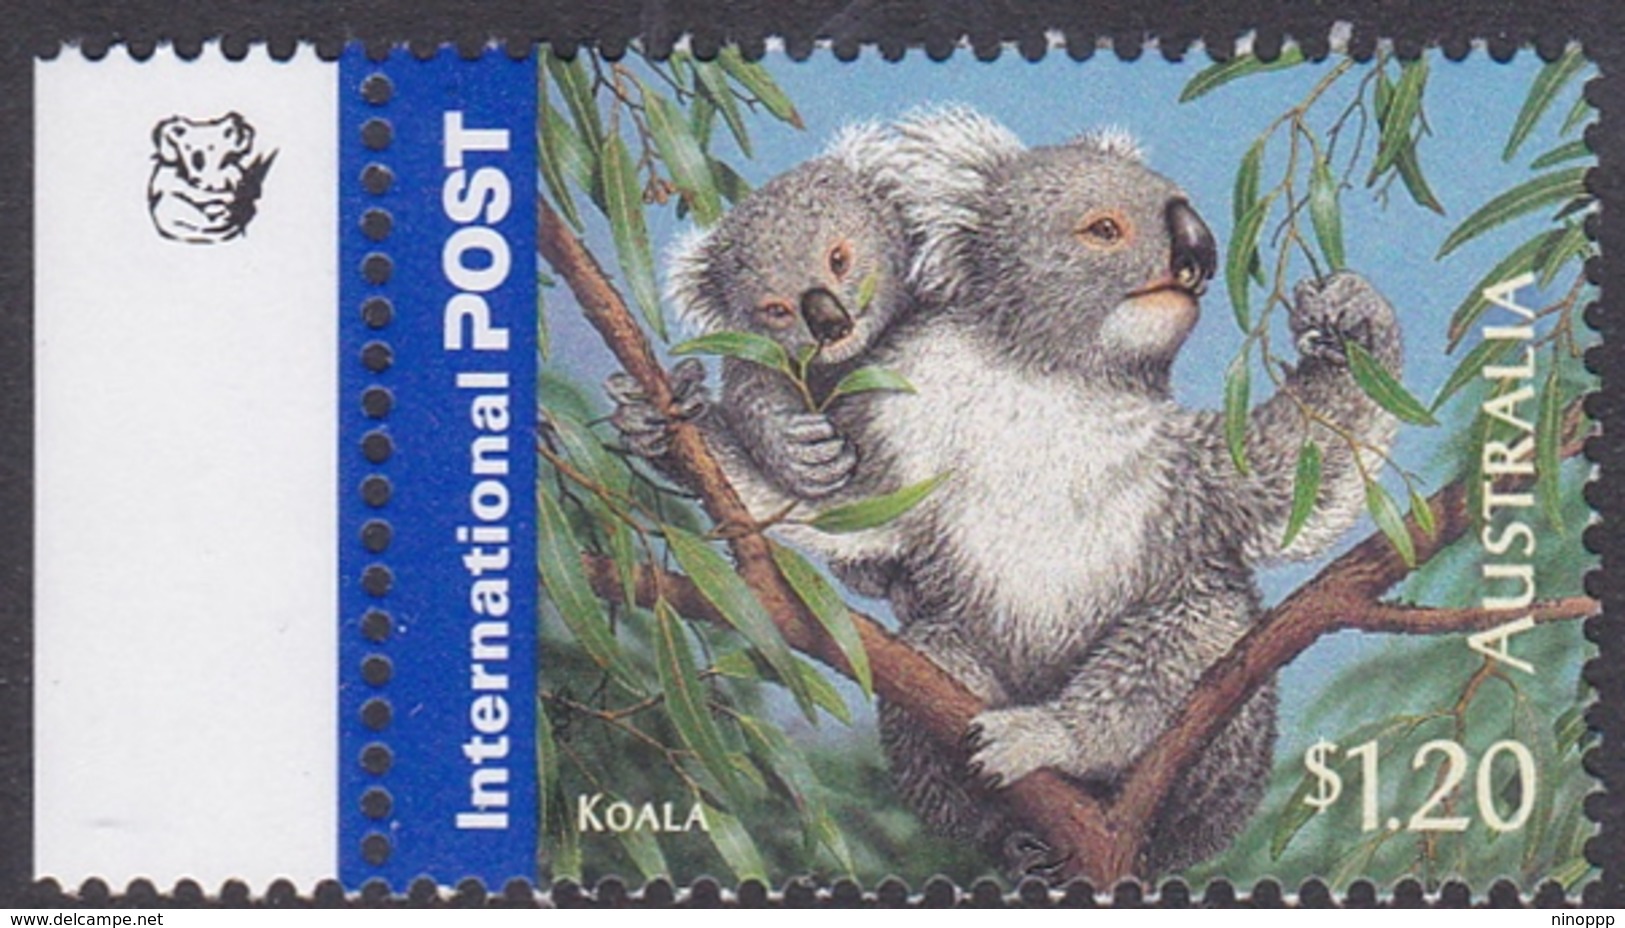 Australia ASC 2203a 2005 Bushlife $ 1.20 Koala 1 Koala, Mint Never Hinged - Proofs & Reprints